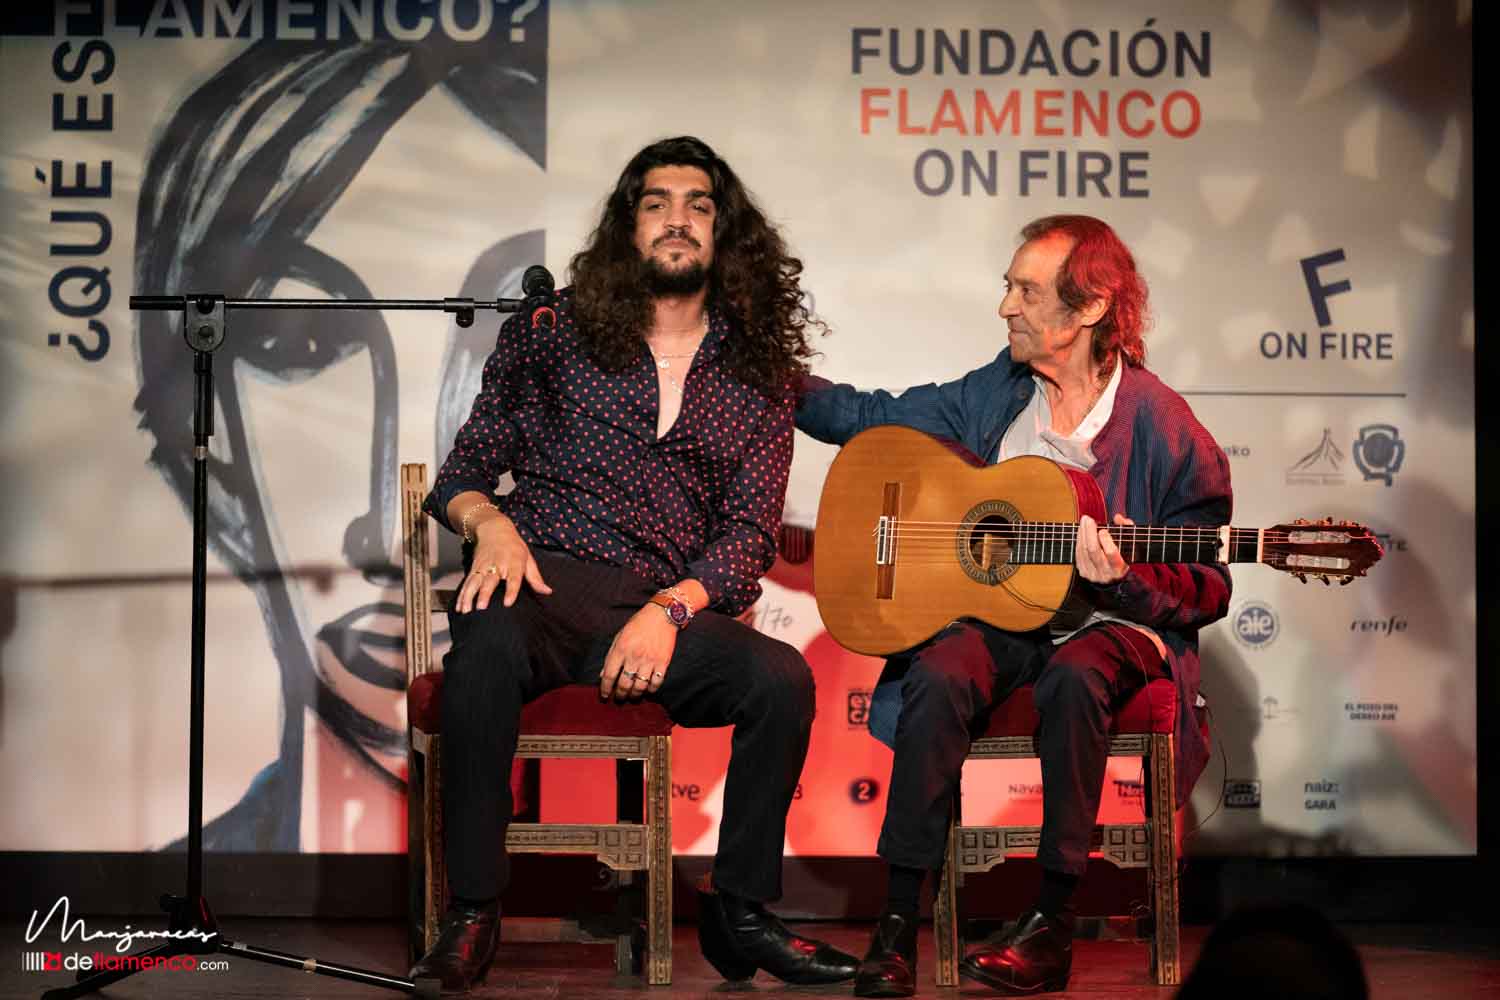 Flamenco on Fire comienza su VIII edición celebrando la diversidad del flamenco